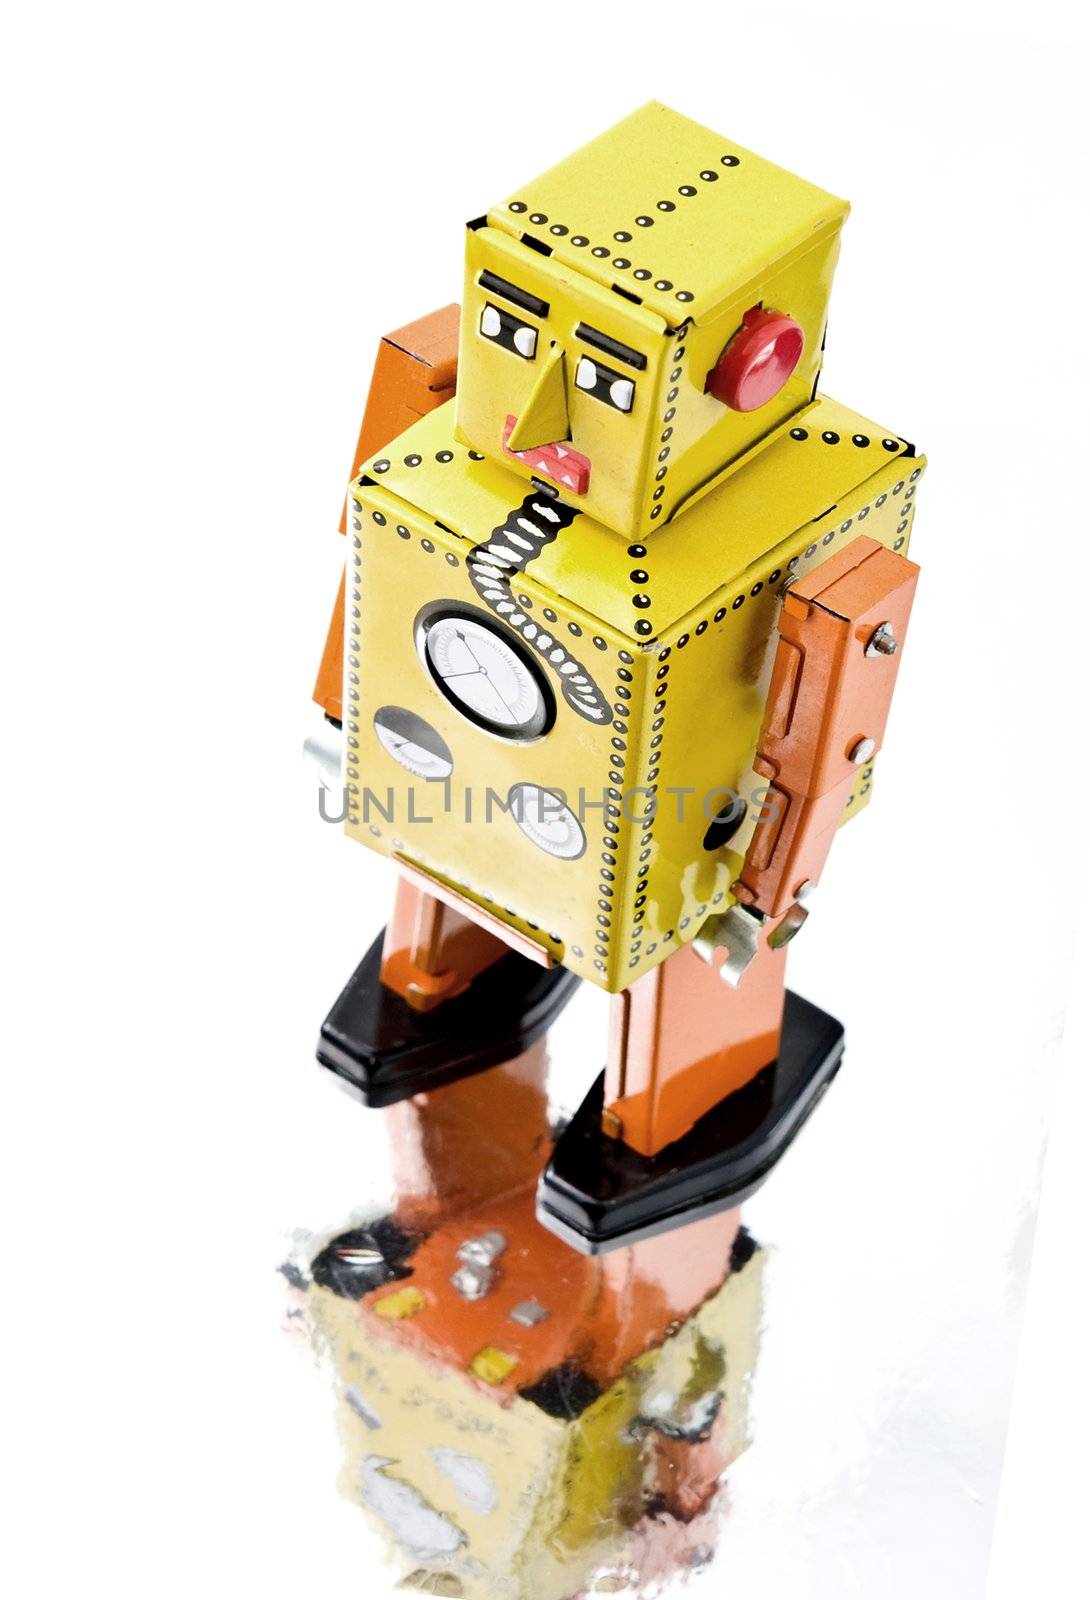 retro robot toy